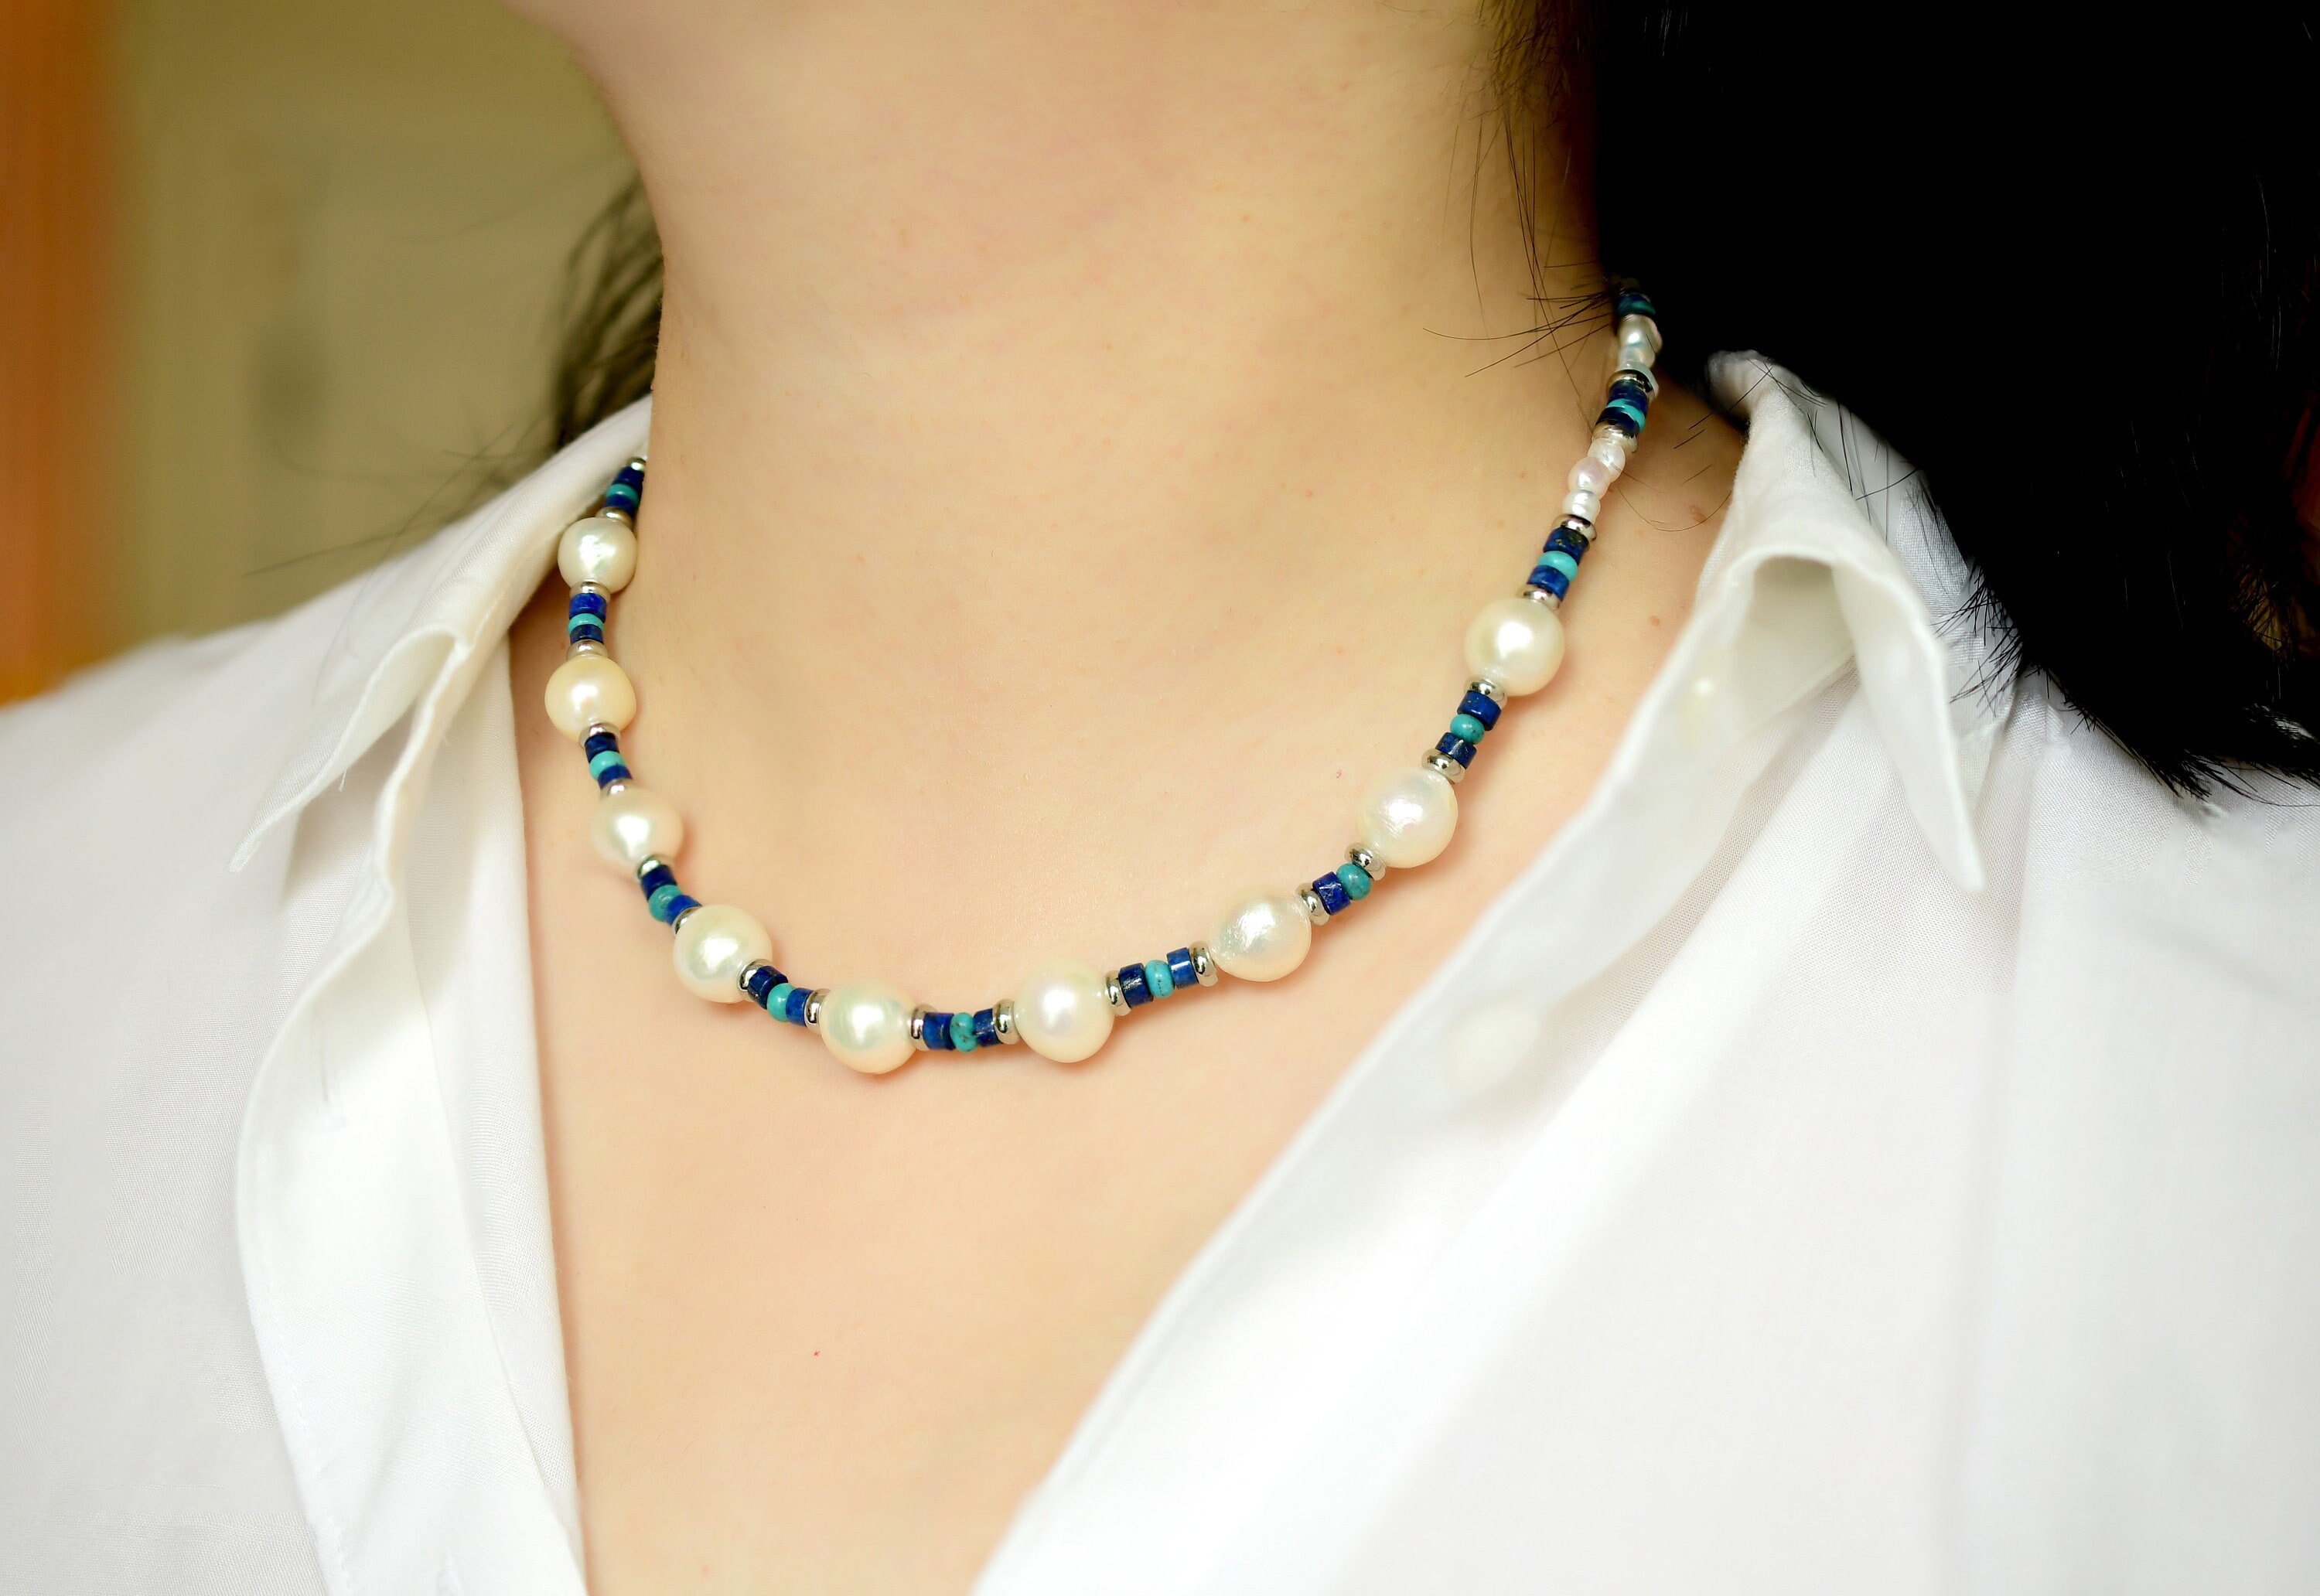 Drop Pearls, Biwa Pearl & Gemstones Necklace in 925 Silver - Borneo Pearls